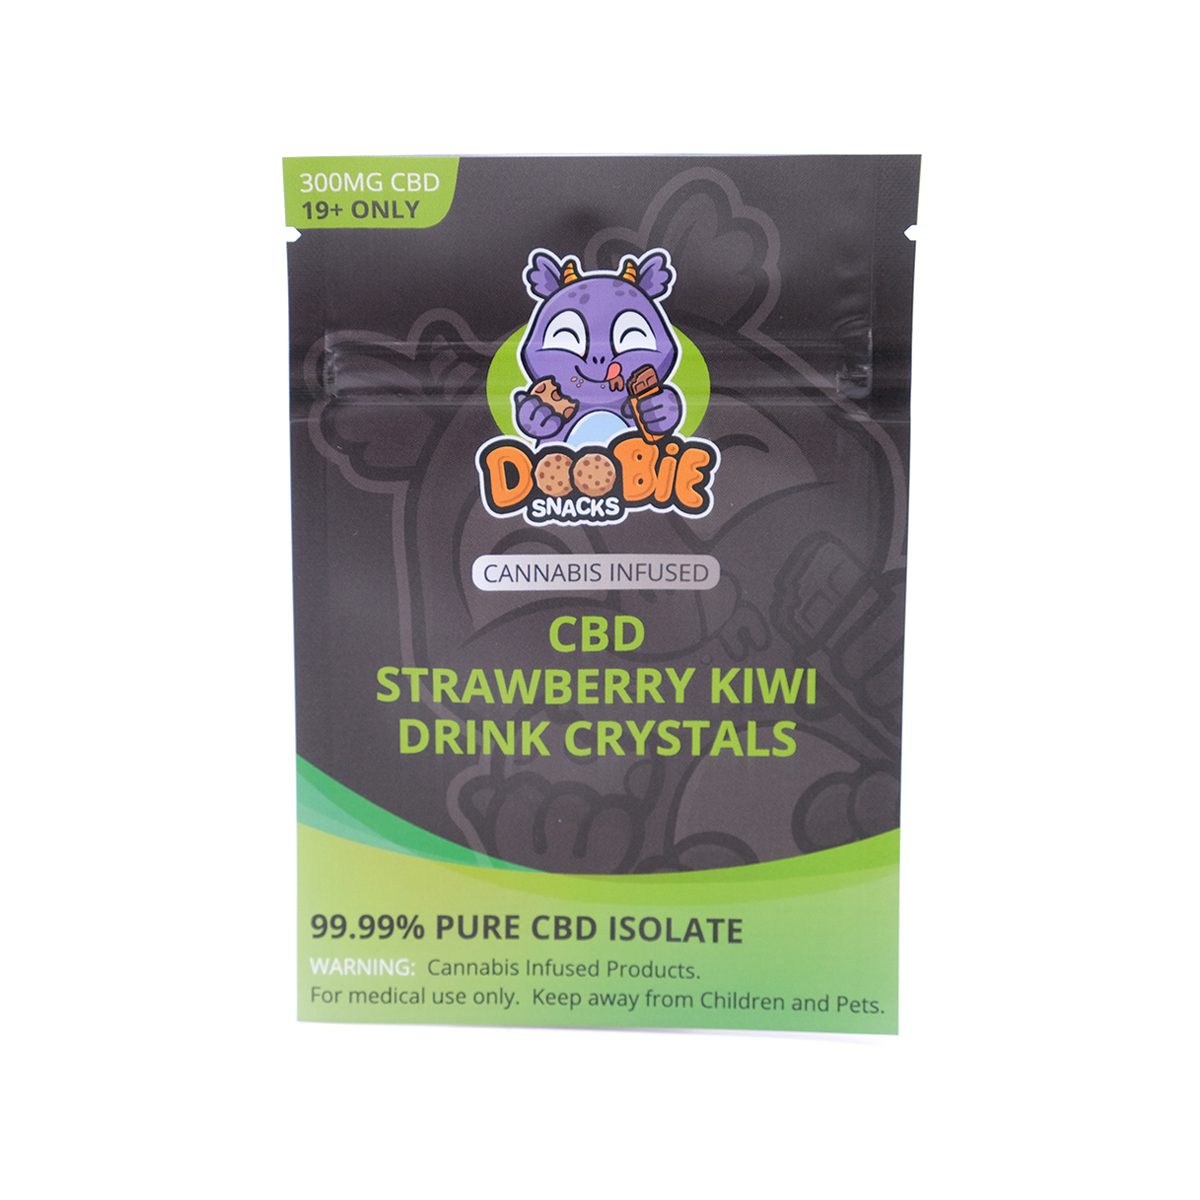 Buy Strawberry Kiwi Crystal Mix 300mg CBD By Doobie Snacks